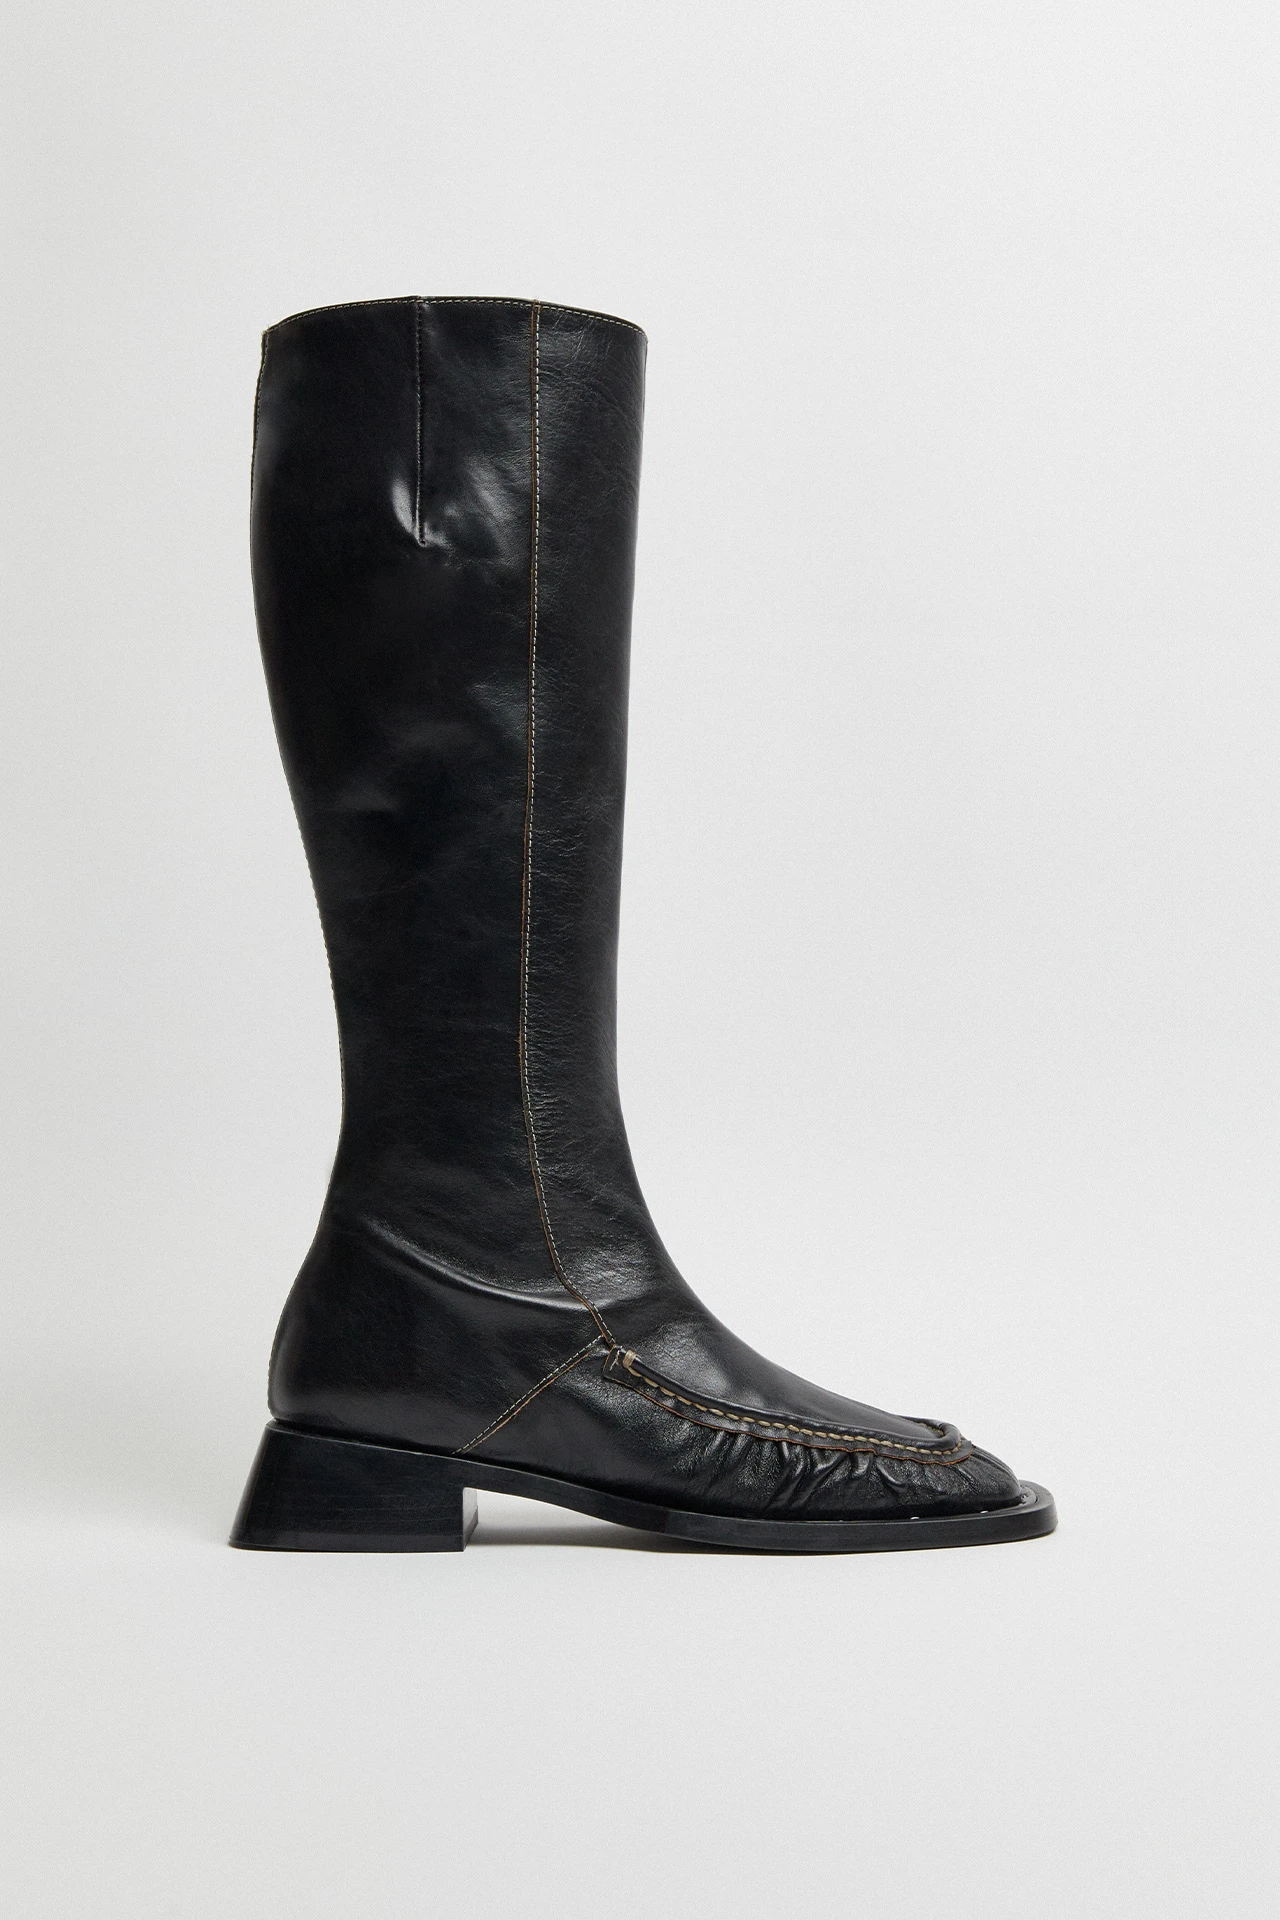 Miista-pats-black-tall-boots-01